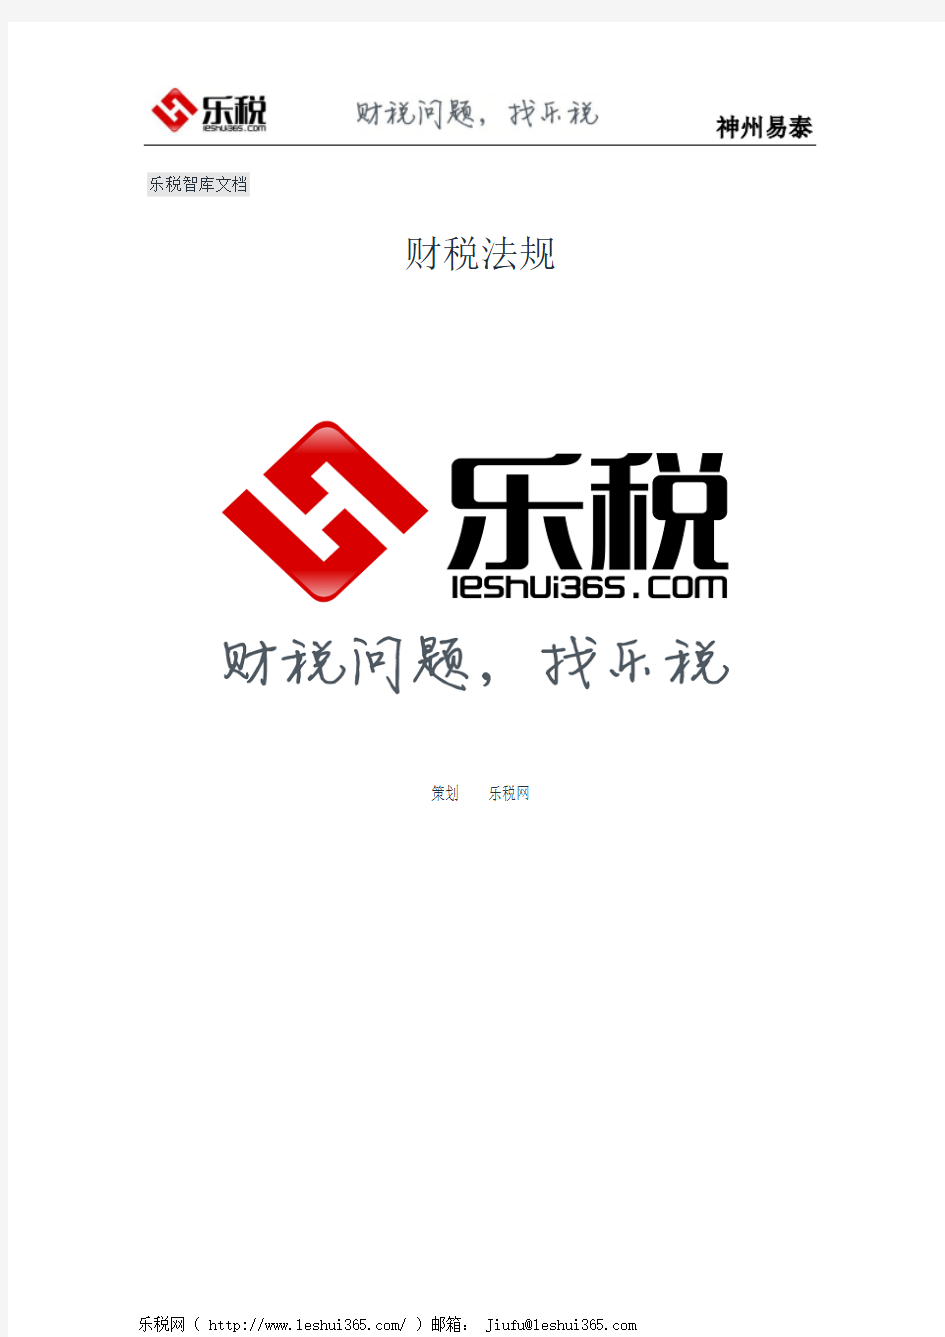 重庆市地方税务局关于印发《重庆市建筑安装业个人所得税征收管理